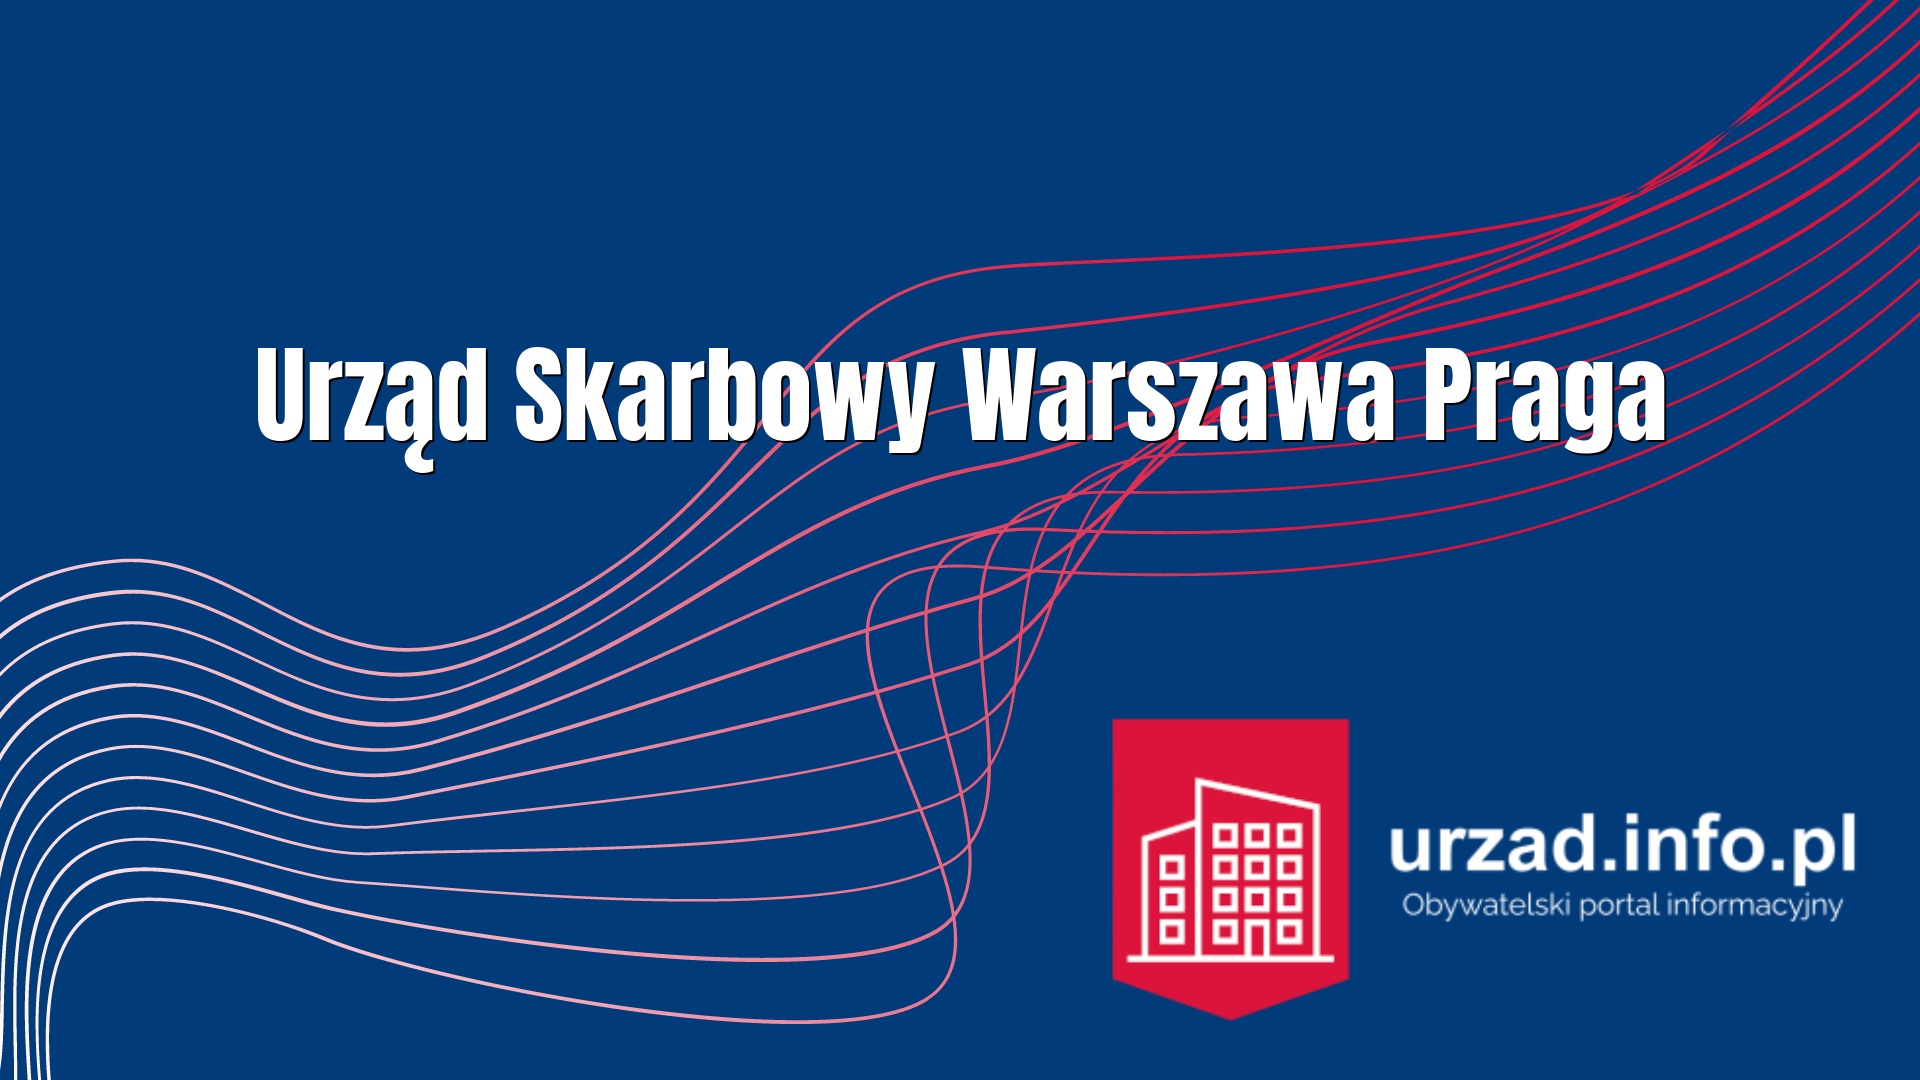 Urząd Skarbowy Warszawa Praga